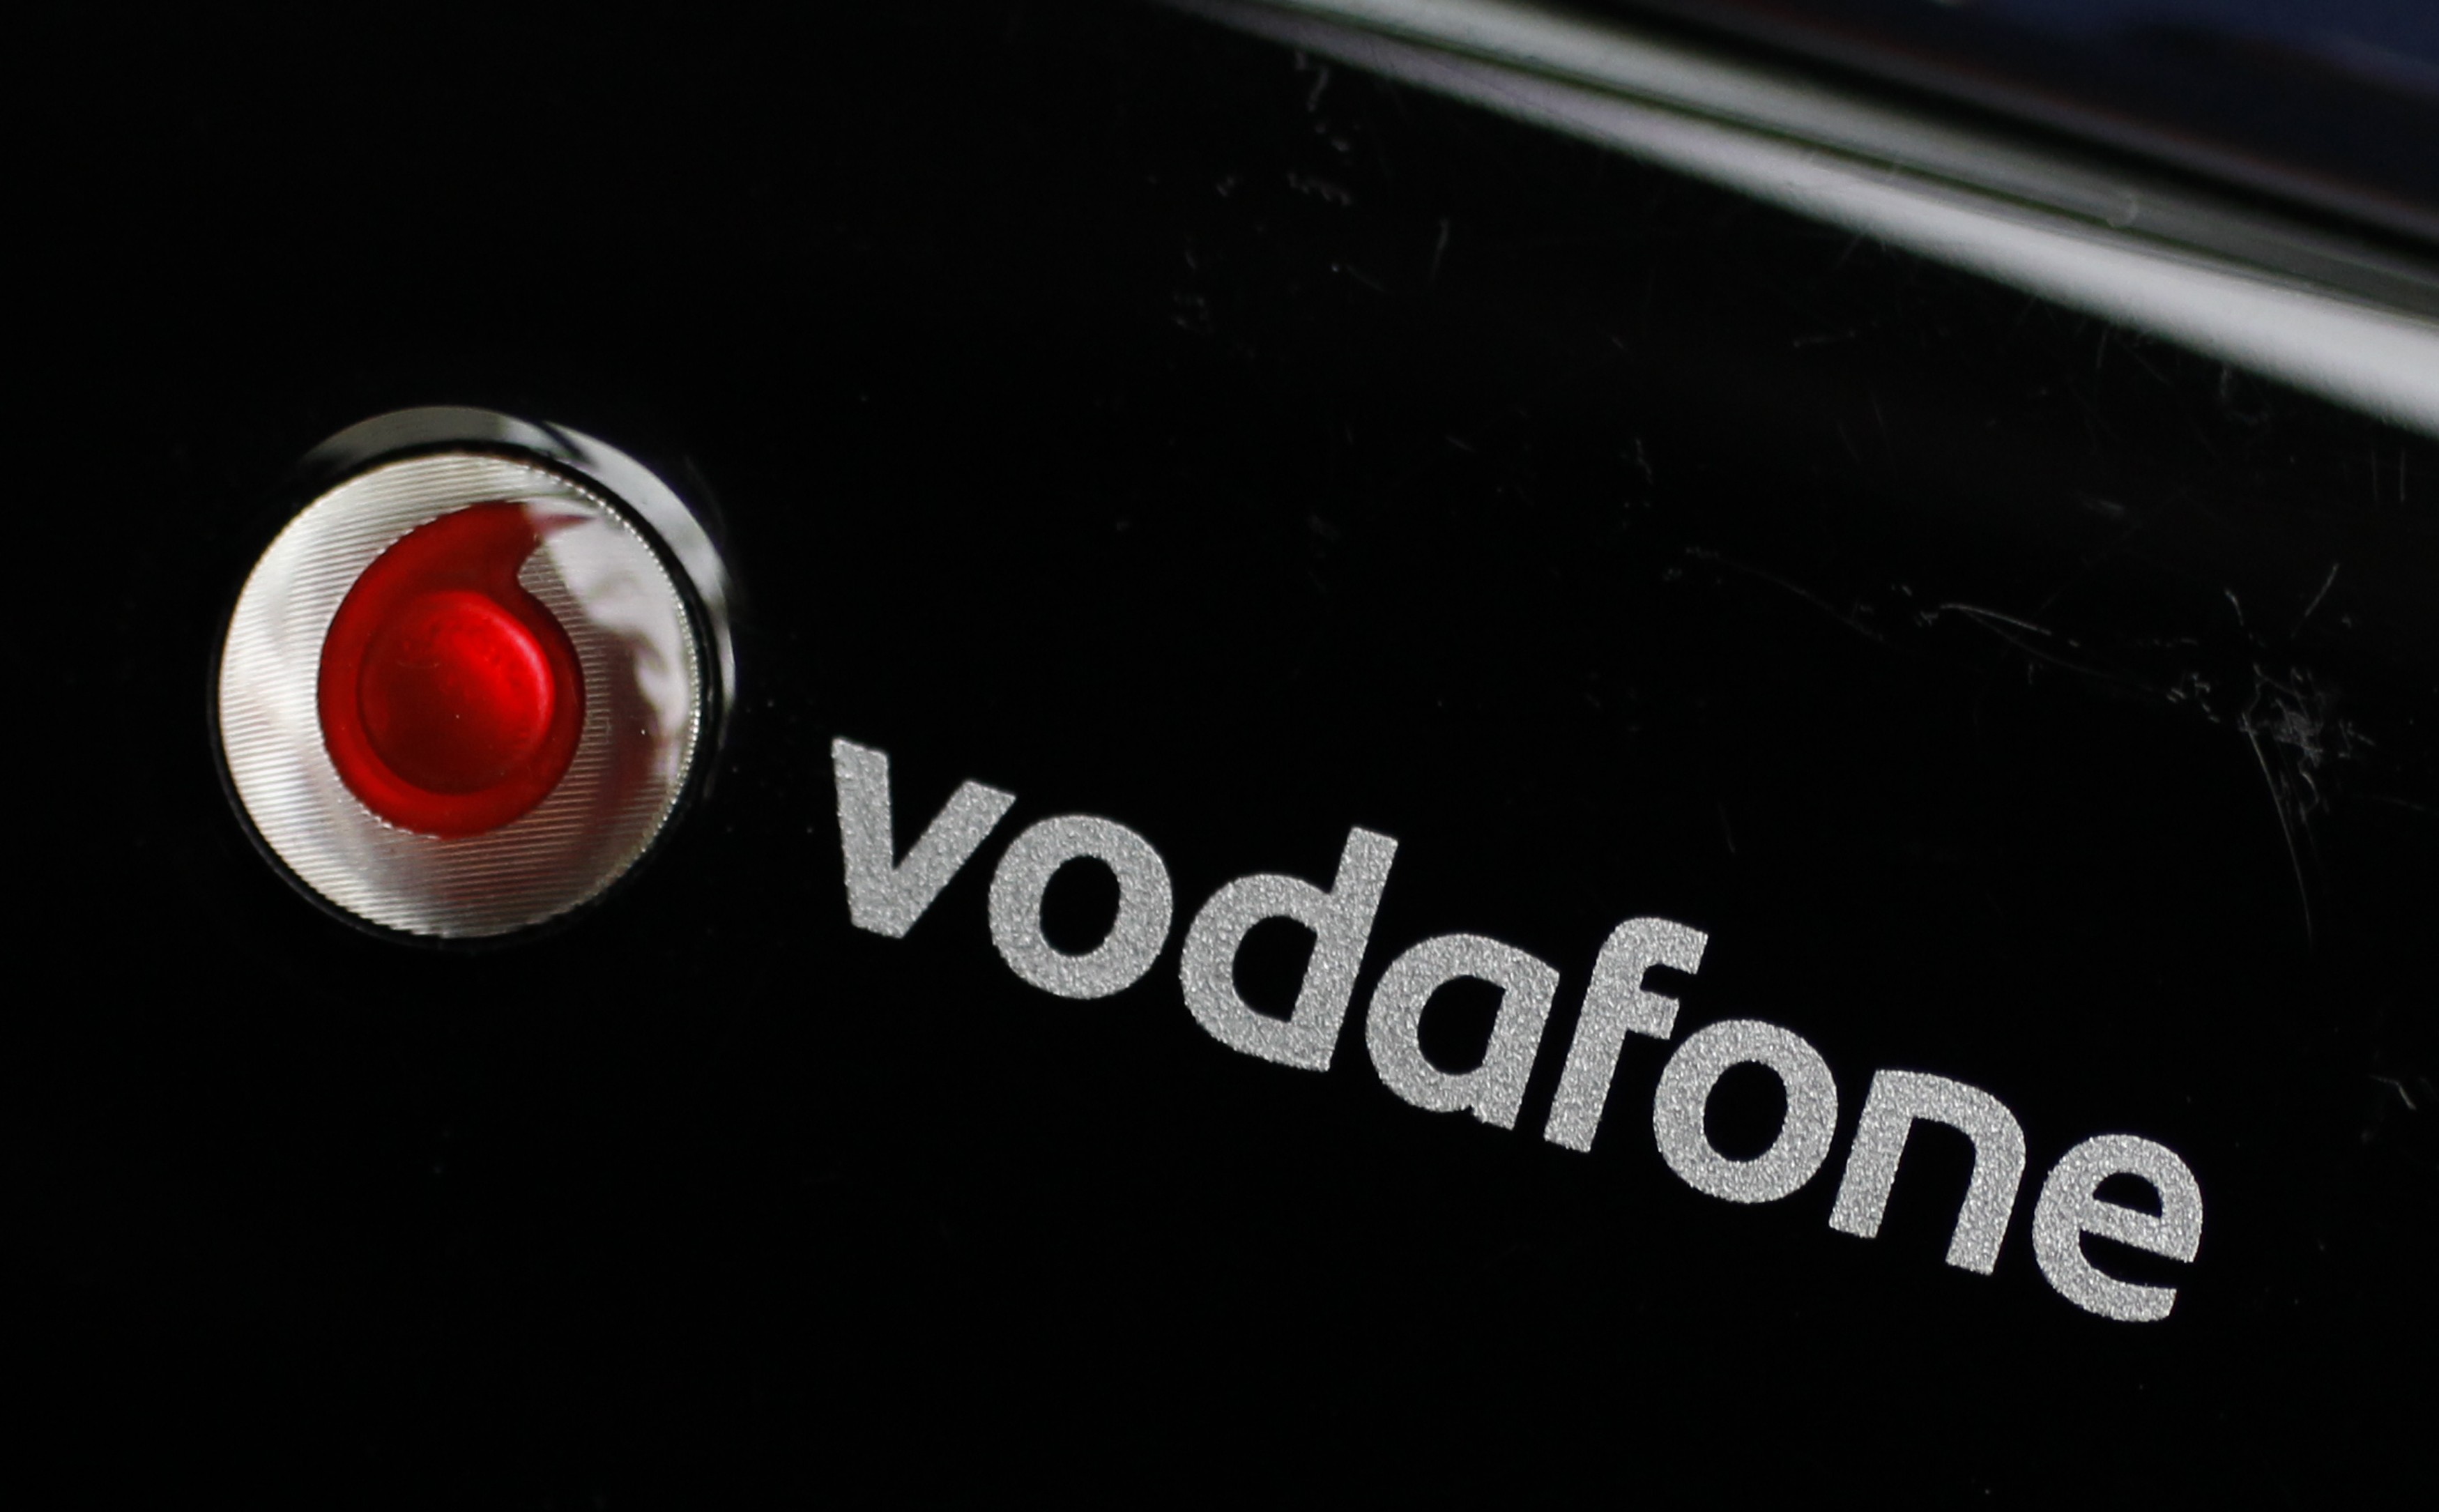 Νέος διευθύνων σύμβουλος για τη Vodafone